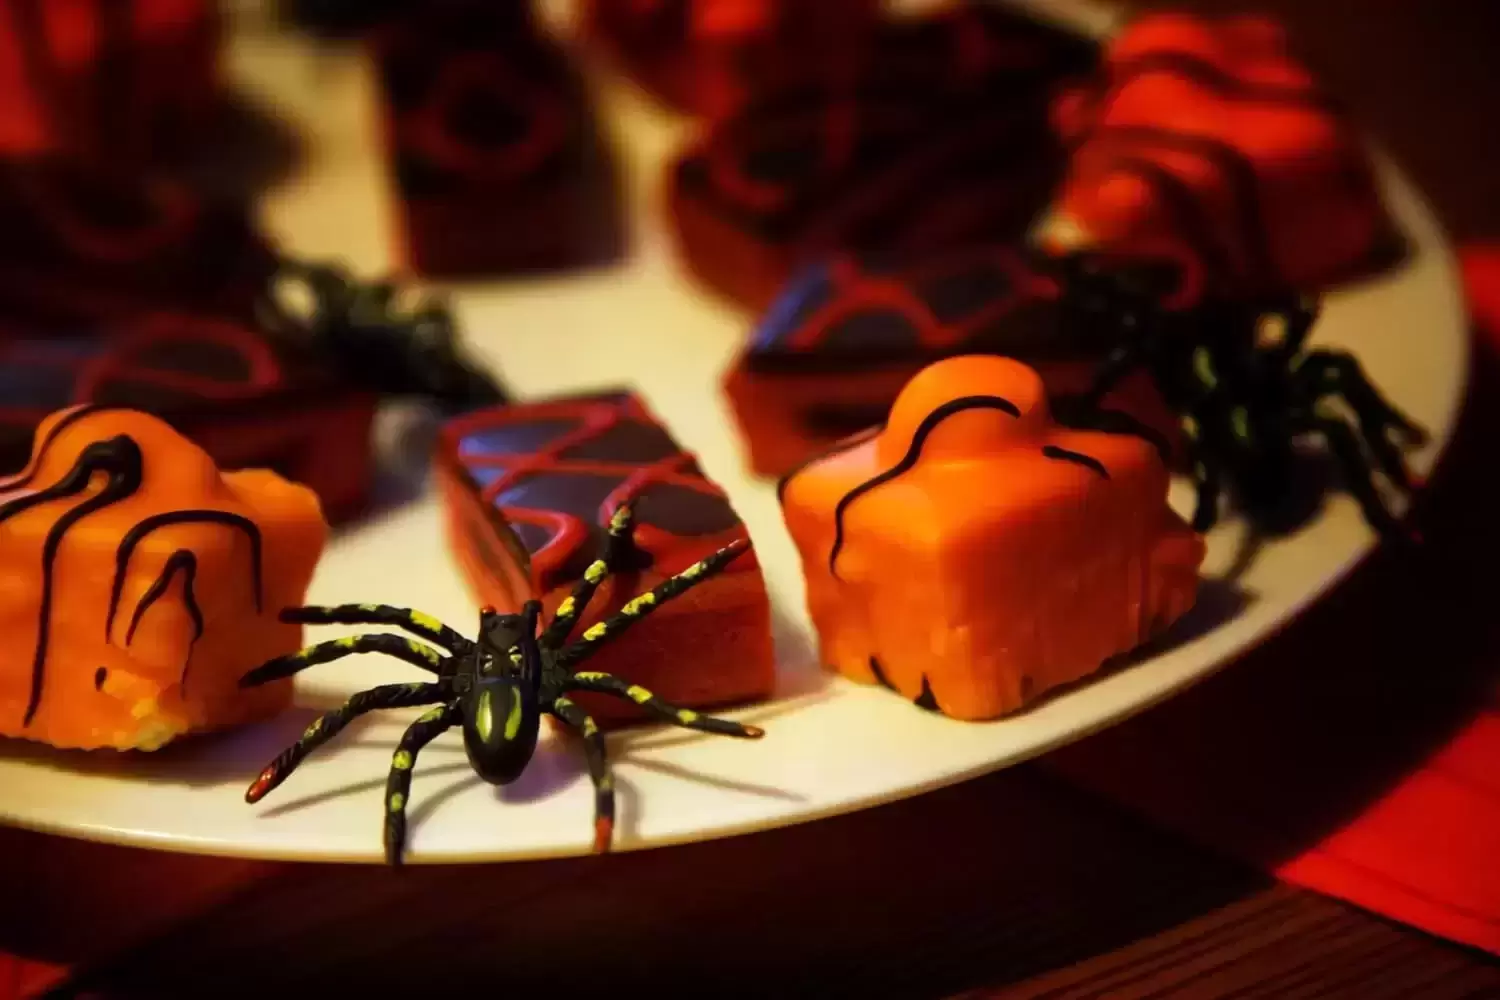 Pasiruoškite Helovinui: 3 „šiurpių“ užkandžių receptai teminiam vakarėliui